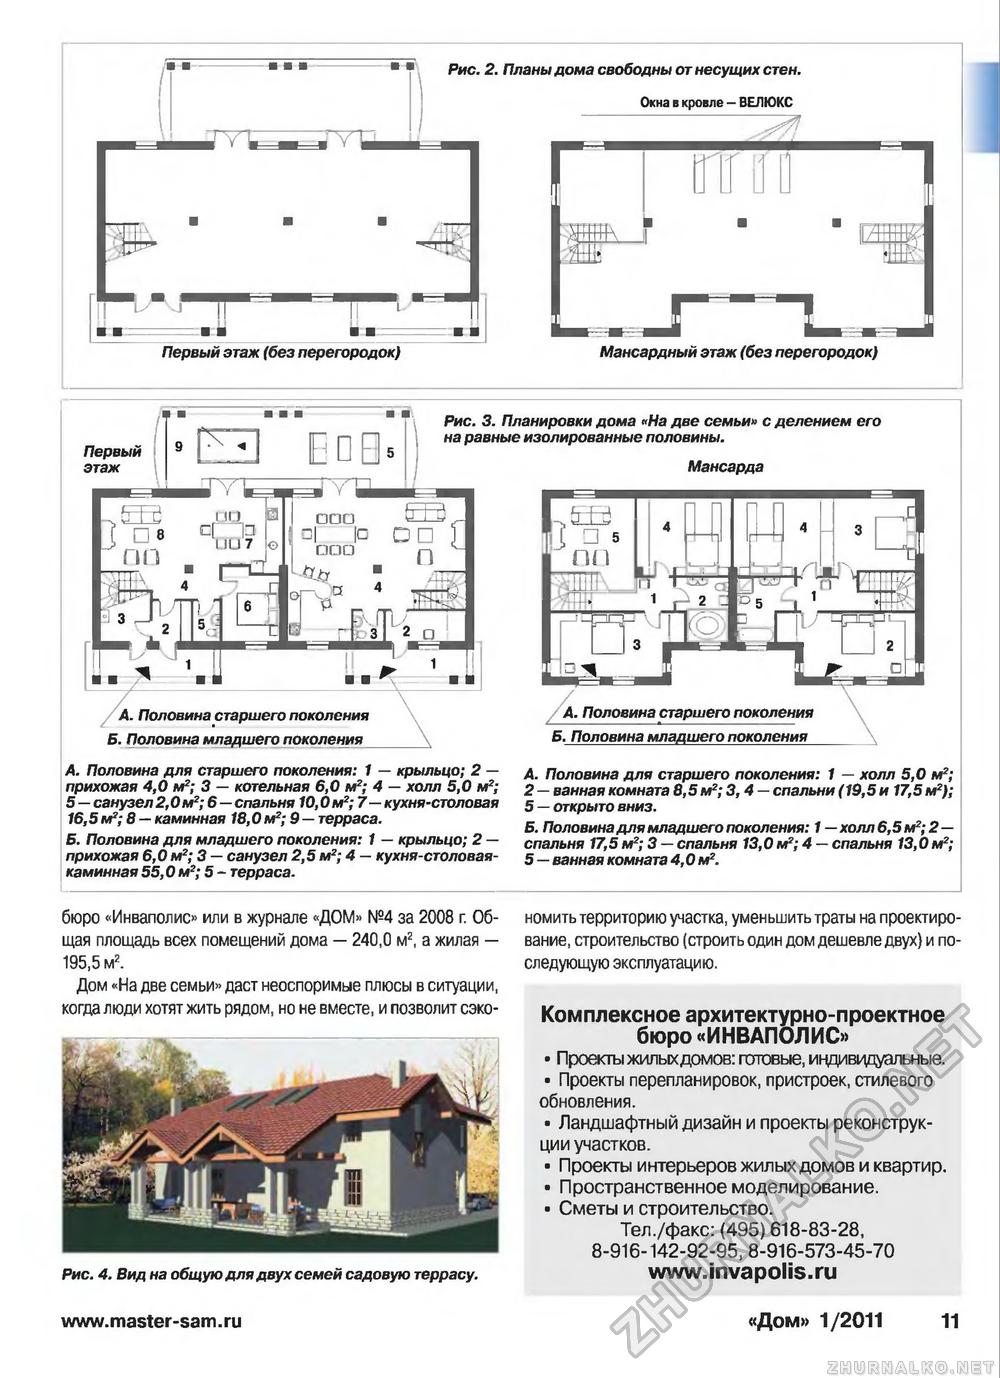 Дом 2011-01, страница 11